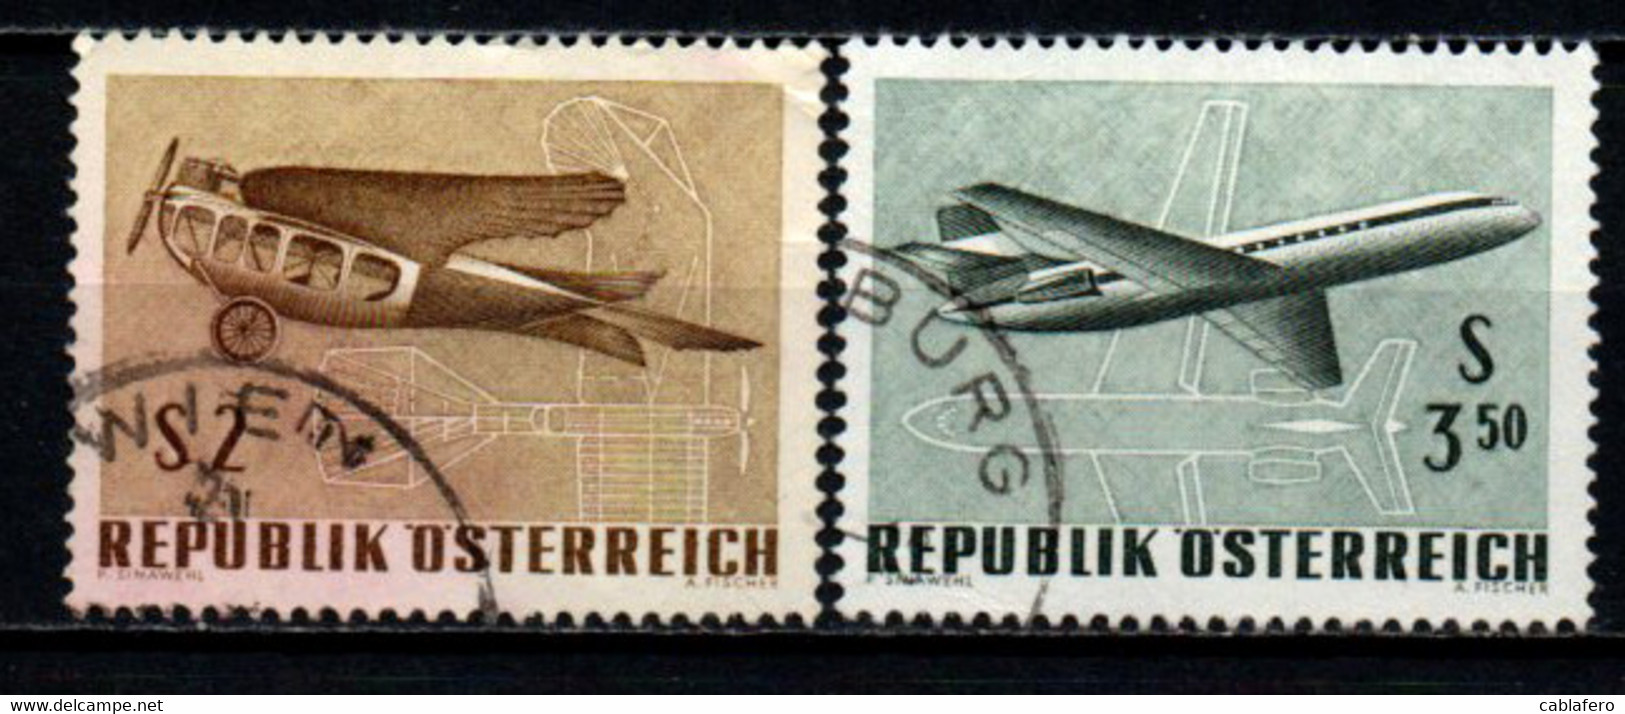 AUSTRIA - 1968 - ESPOSIZIONE INTERNAZIONALE DI POSTA AEREA A VIENNA - USATI - Gebraucht